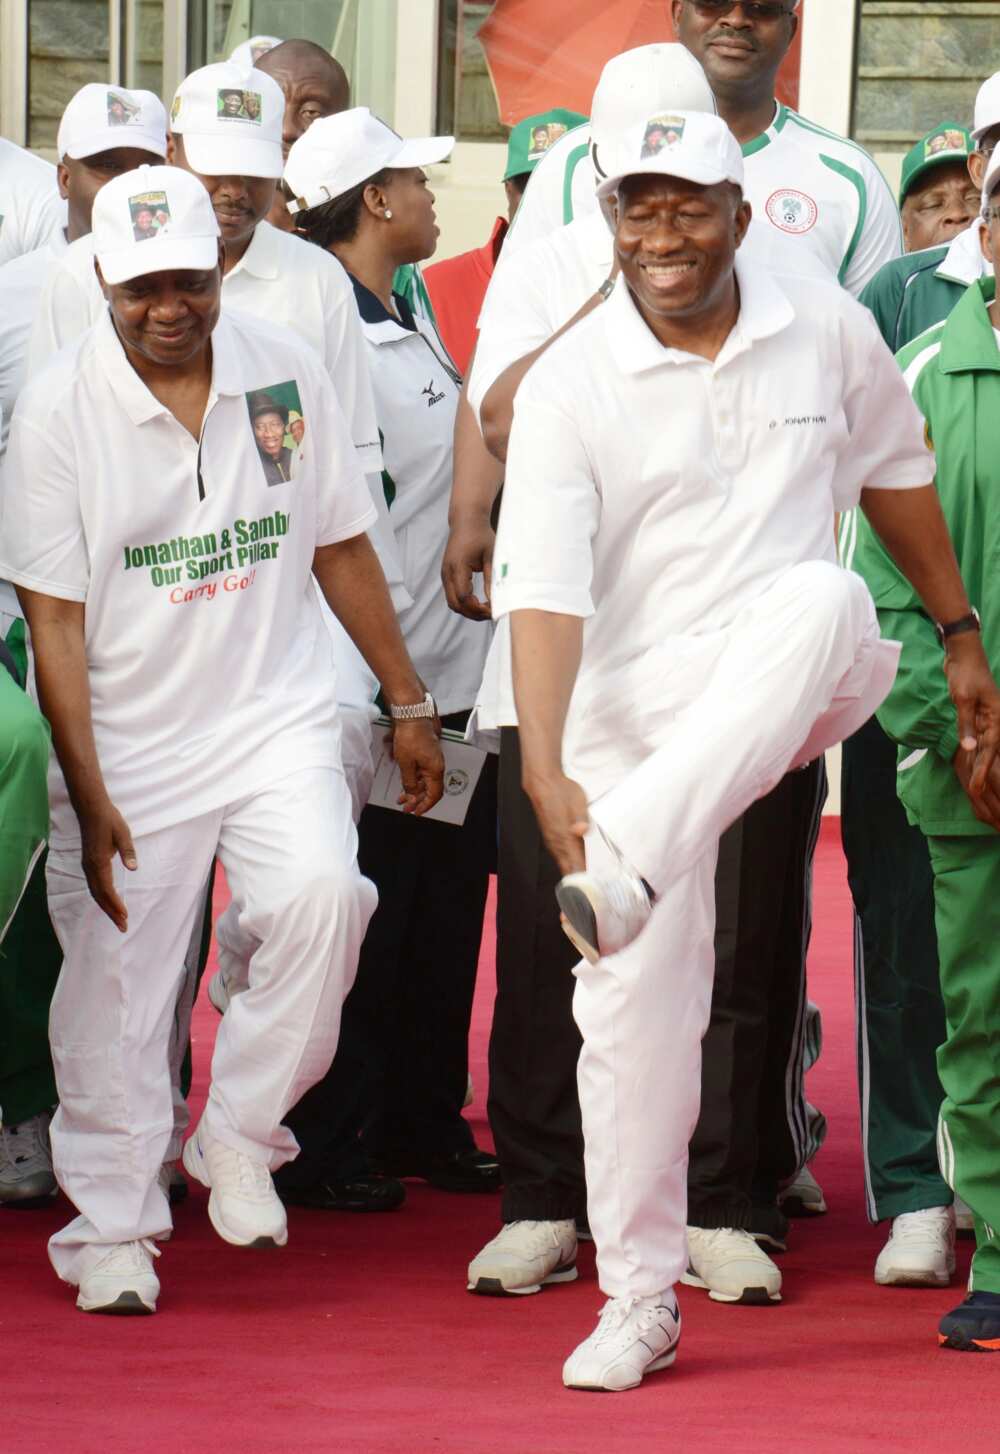 Buhari treks 800meters, Obasanjo plays football, Jonathan jogs - How Nigerian leaders exercise (photos)